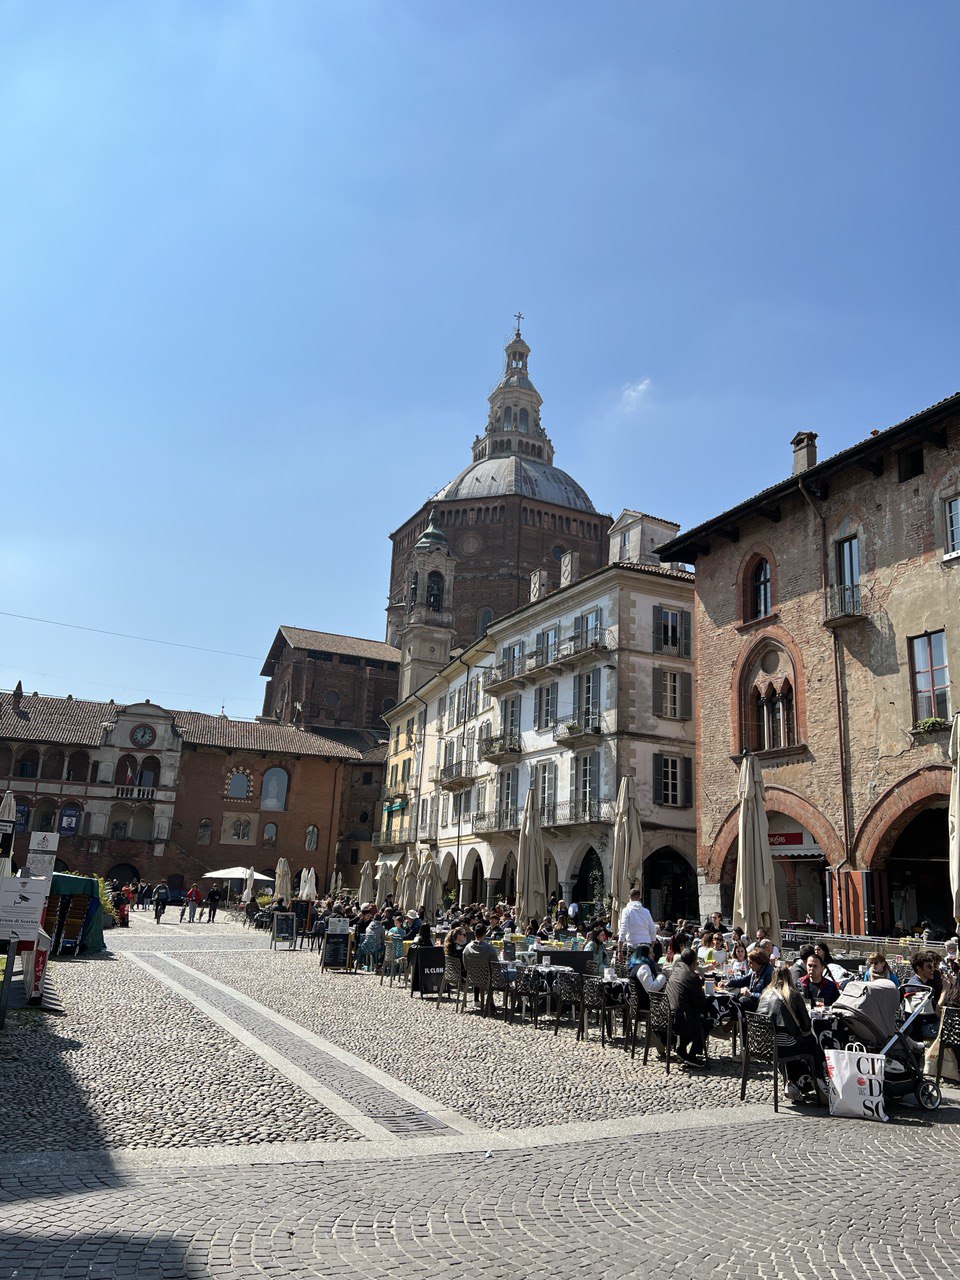 The center of Pavia, piazza della Vittoria